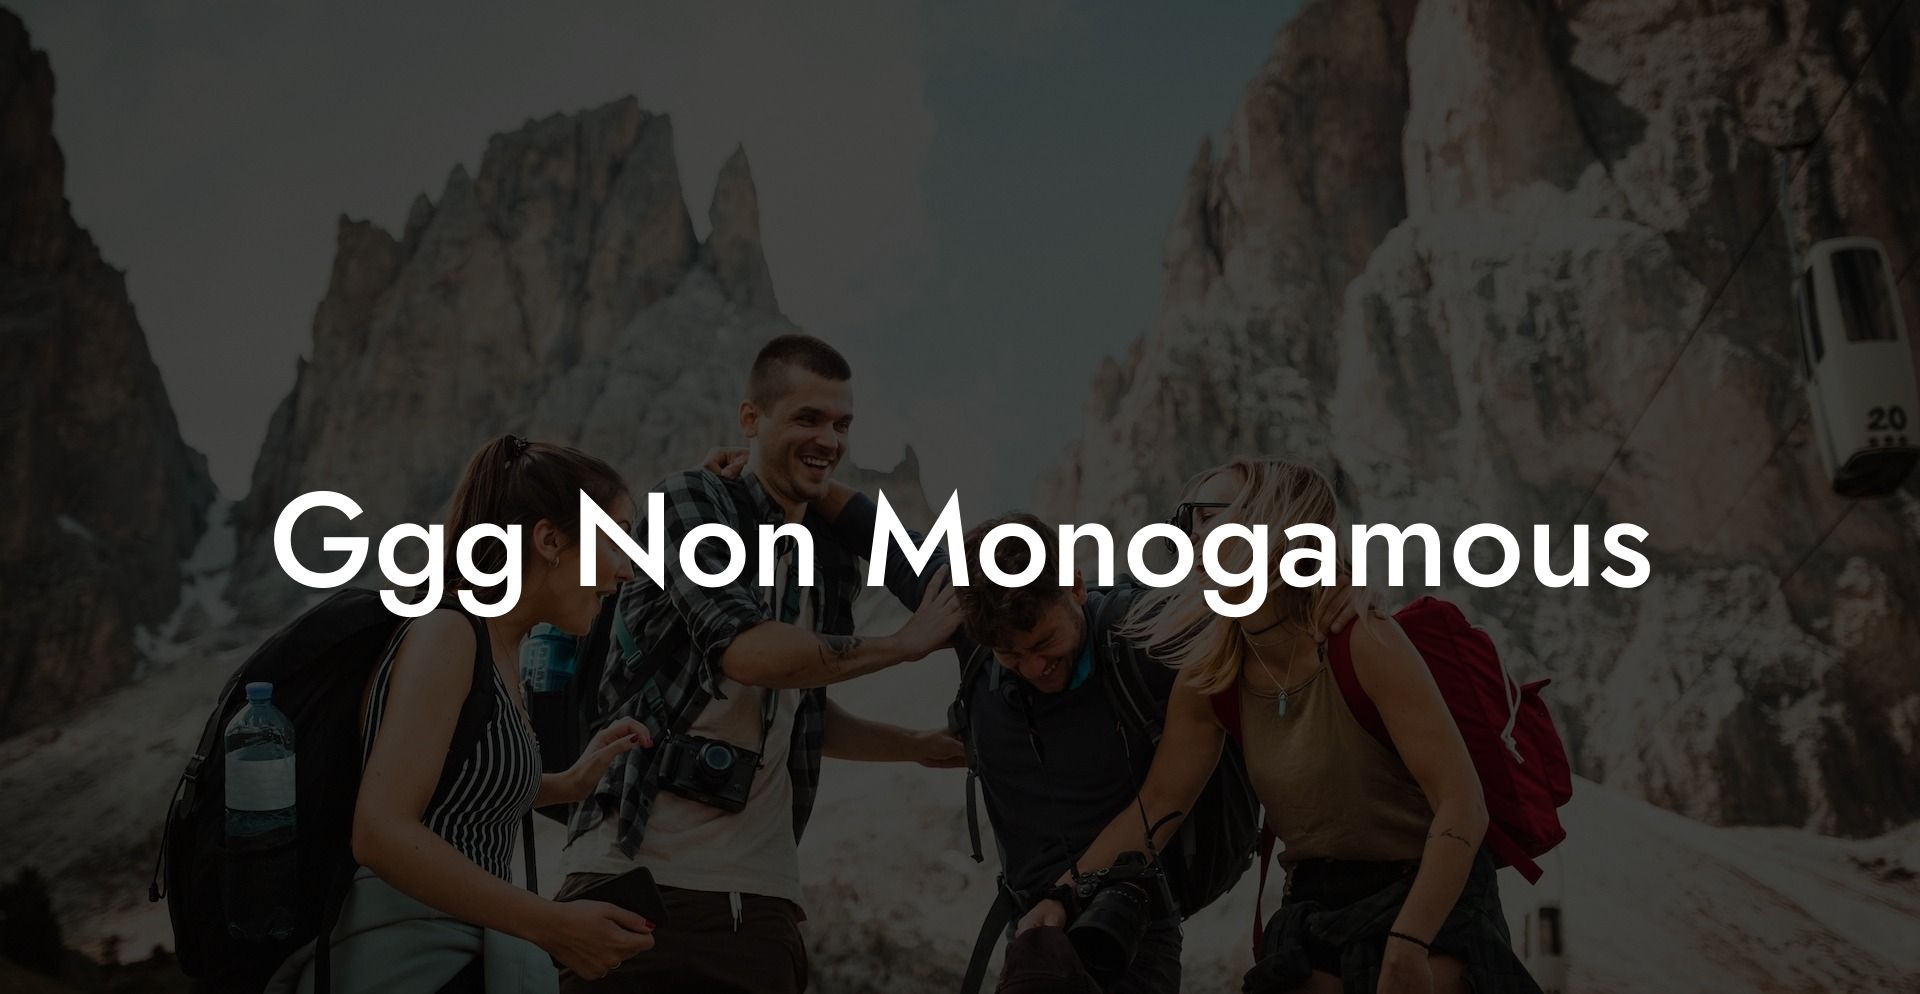 Ggg Non Monogamous